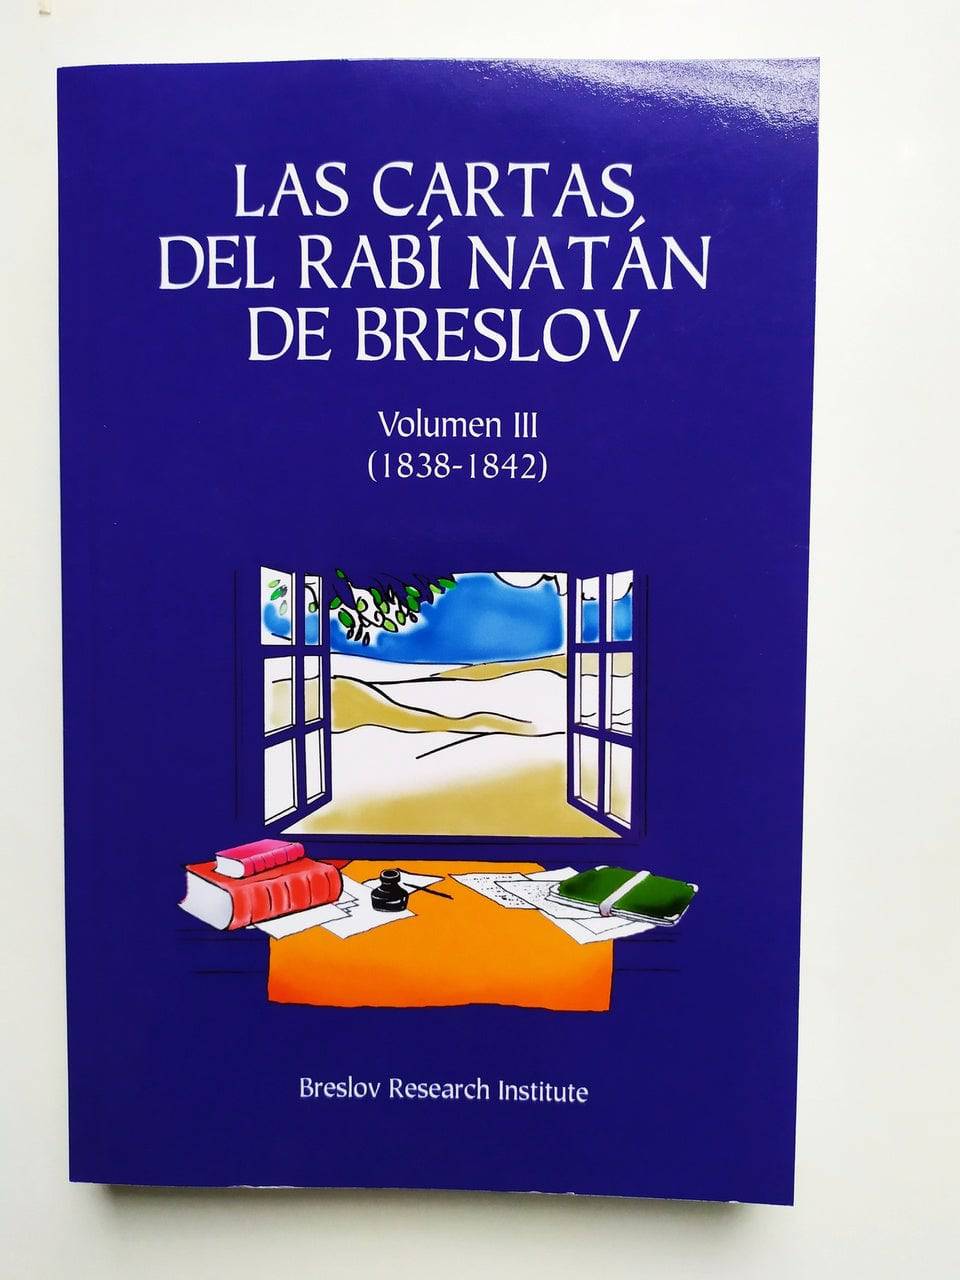 Las cartas del Rabi Natan de Breslov volumen III - Libreria Jerusalem Centro